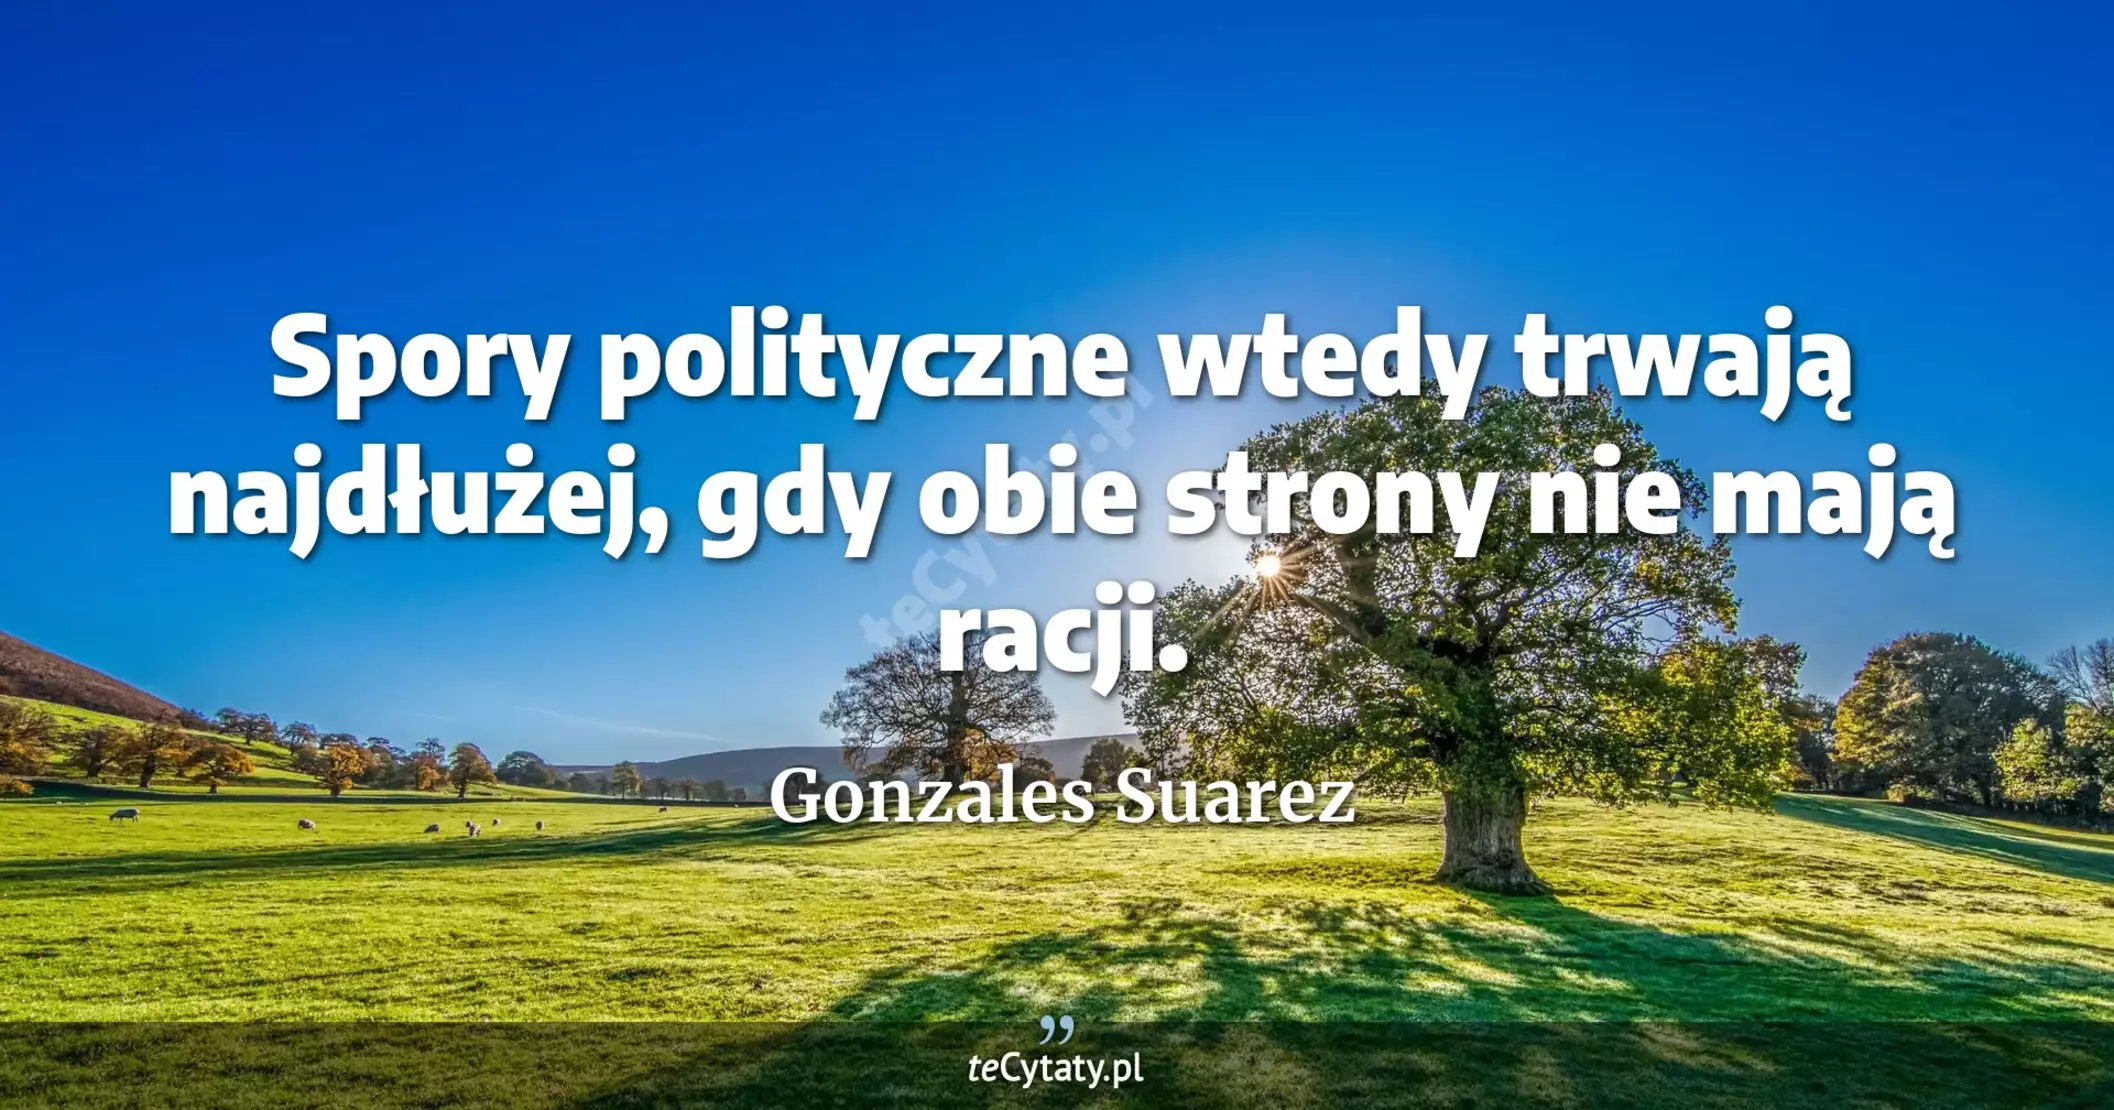 Spory polityczne wtedy trwają najdłużej, gdy obie strony nie mają racji. - Gonzales Suarez